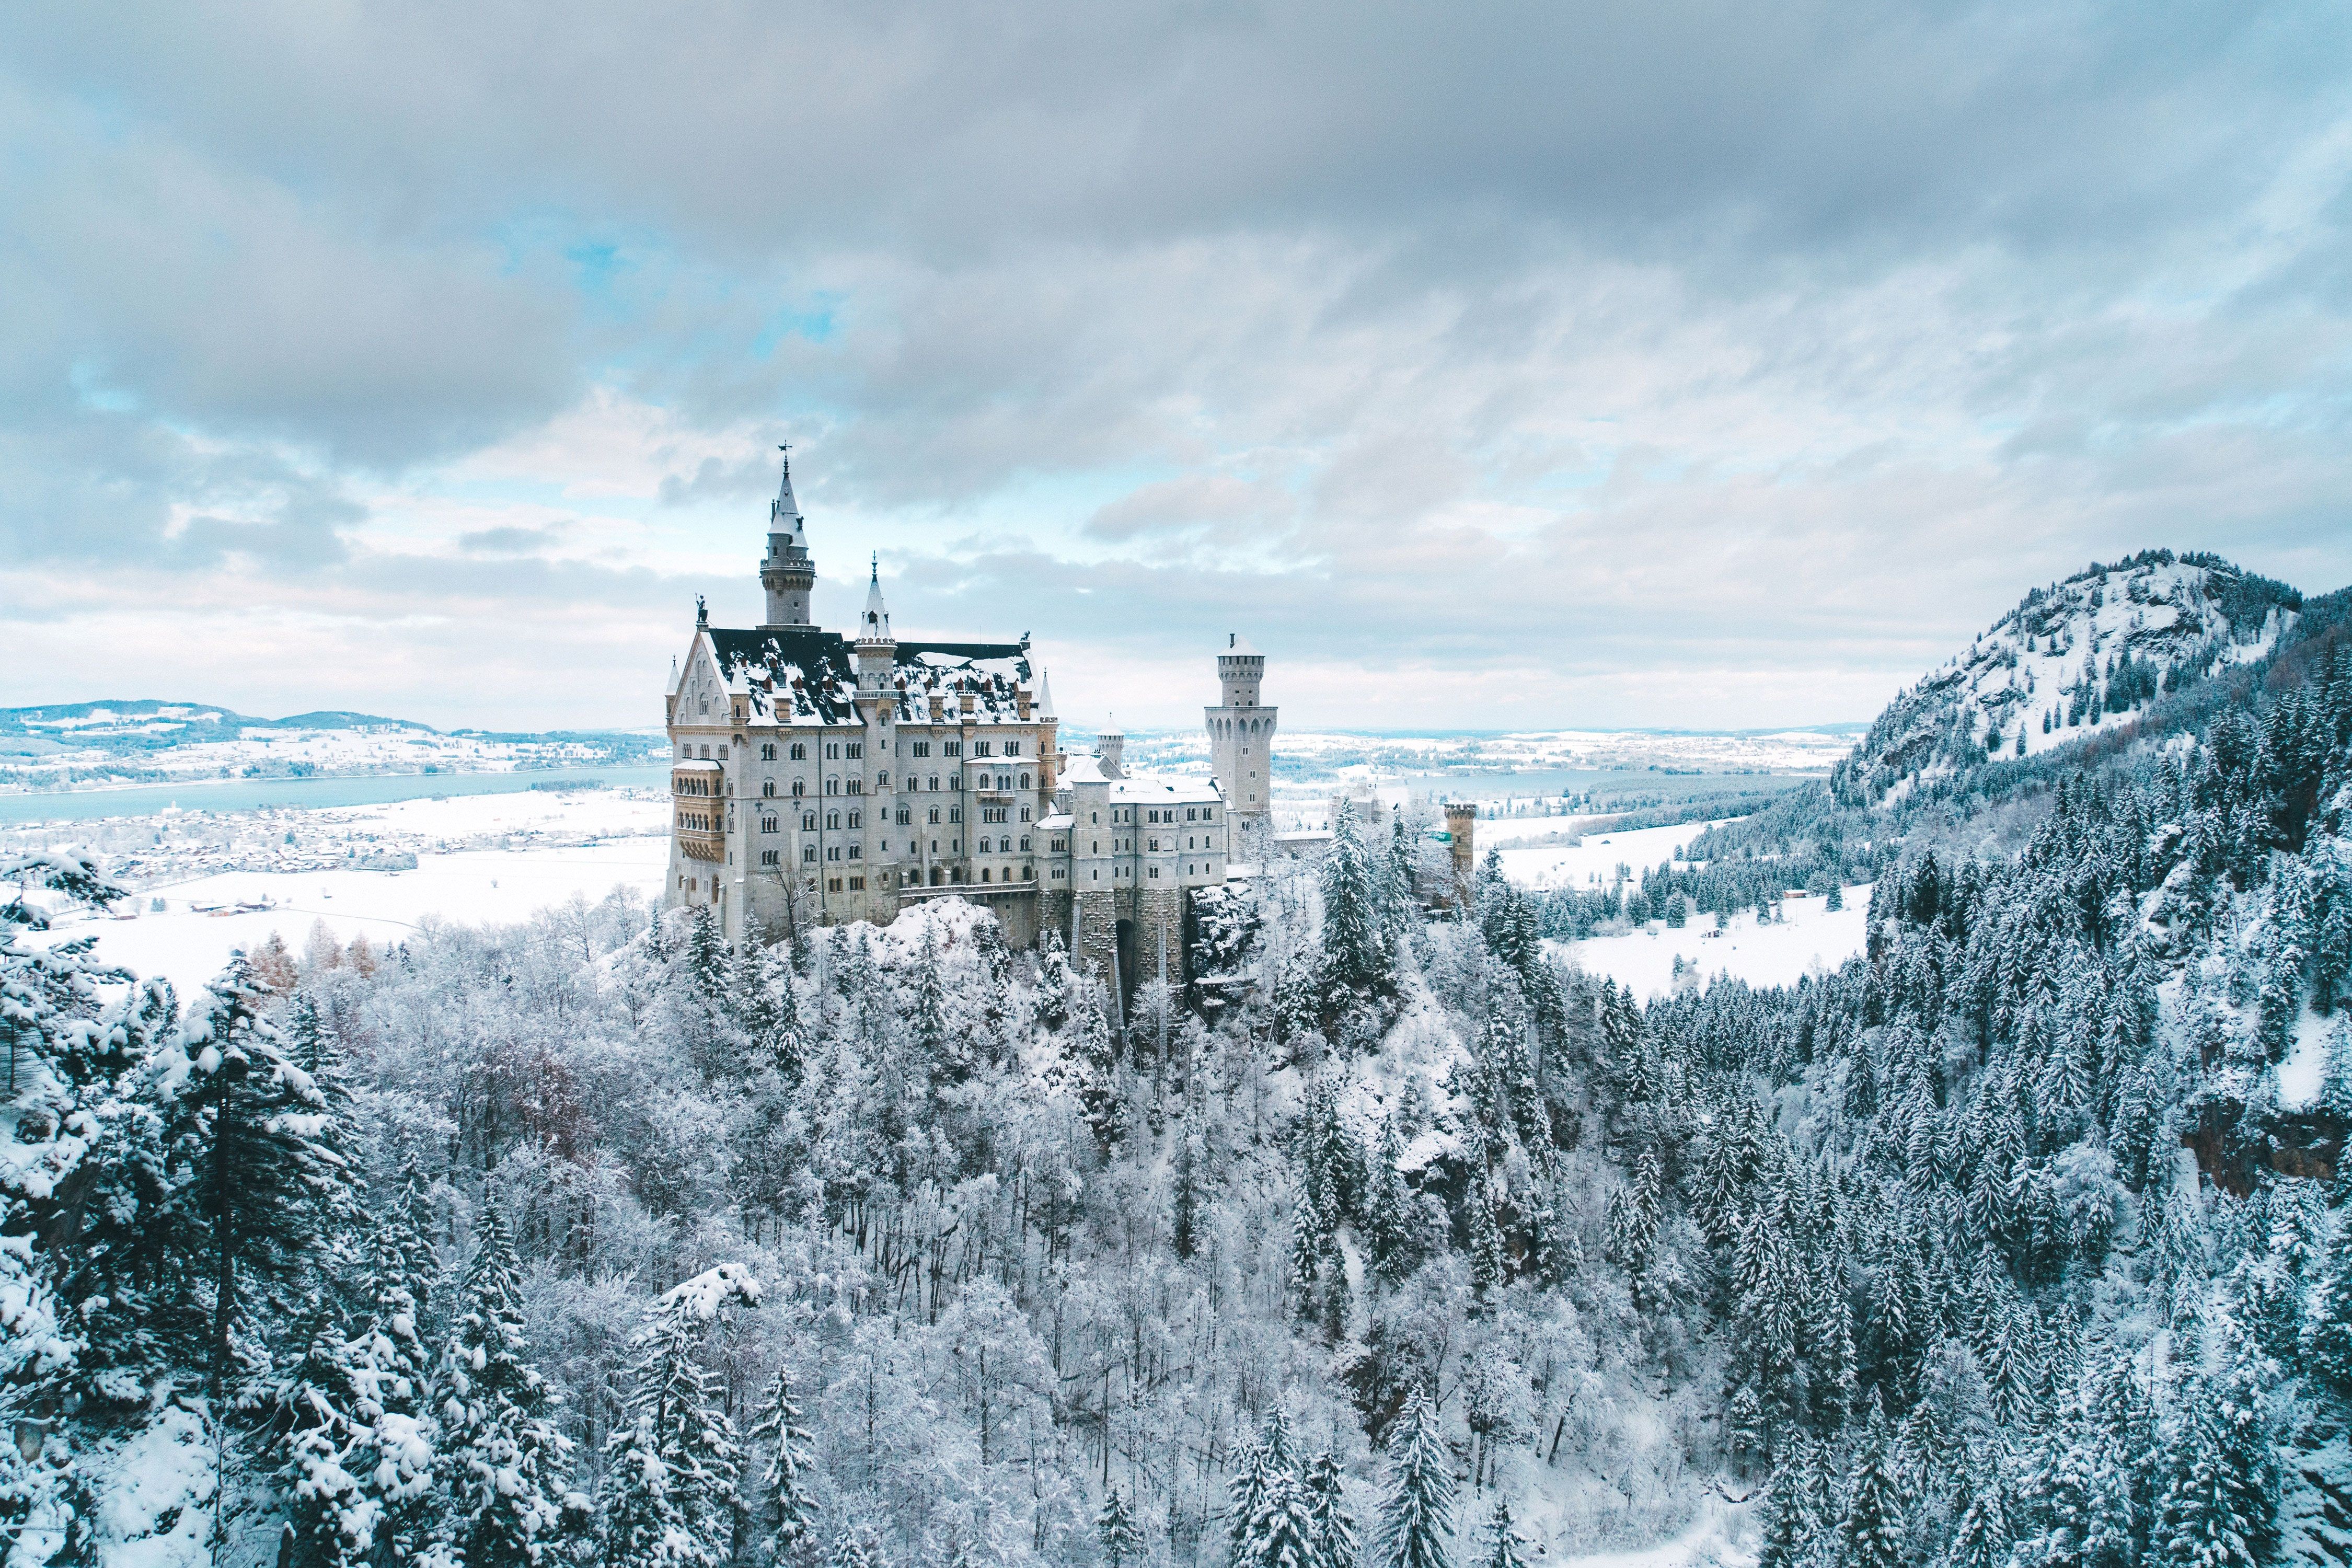 Winter Wonderlands Around the World. Condé Nast Traveler